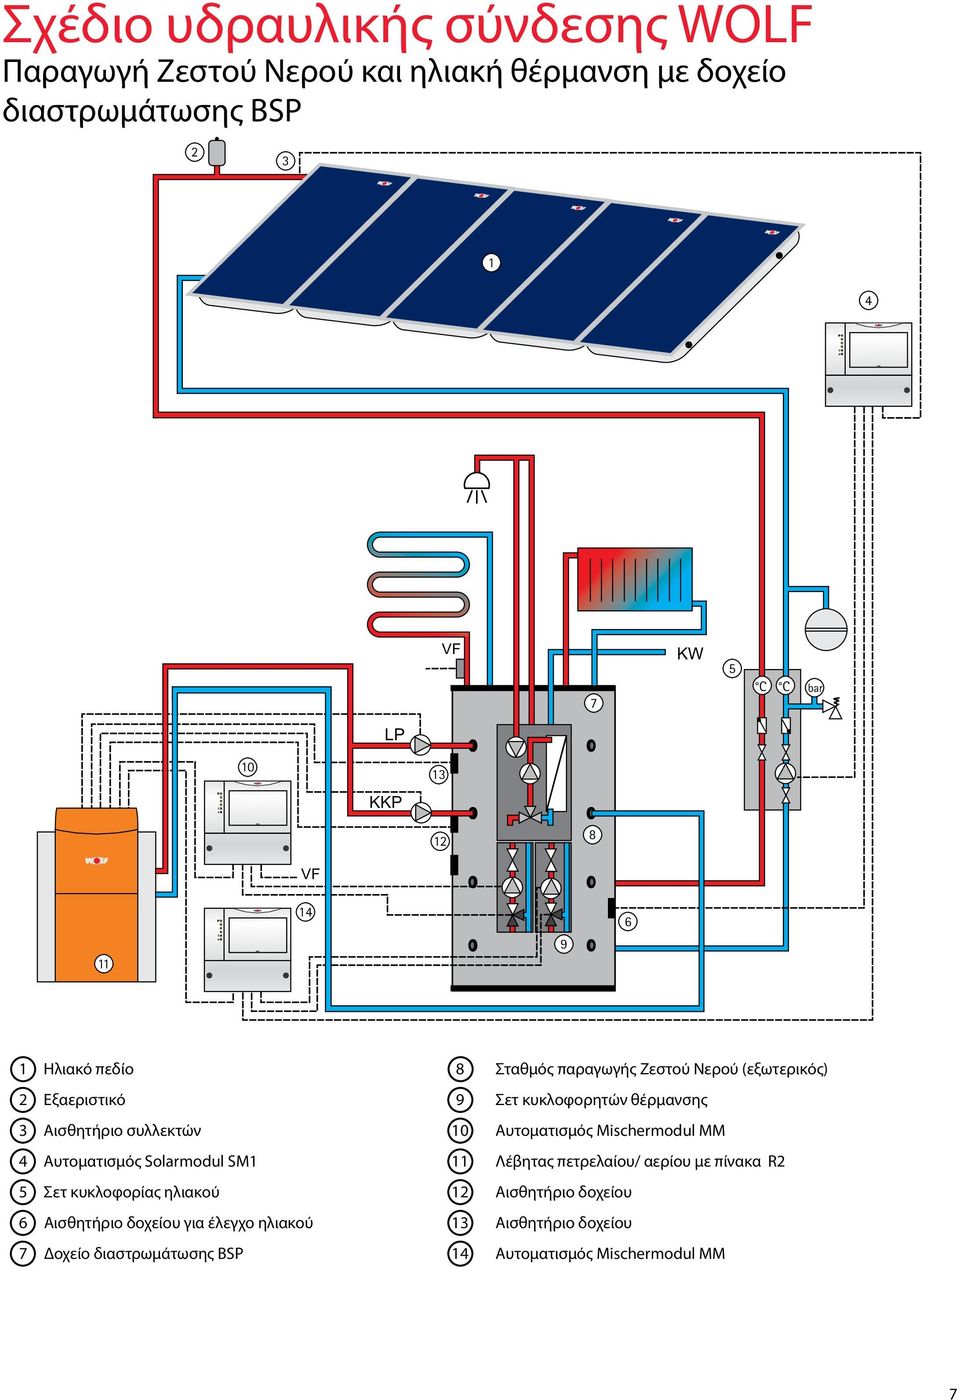 συλλεκτών 10 Αυτοματισμός Mischermodul MM 4 Αυτοματισμός Solarmodul SM1 11 Λέβητας πετρελαίου/ αερίου με πίνακα R2 5 Σετ κυκλοφορίας ηλιακού